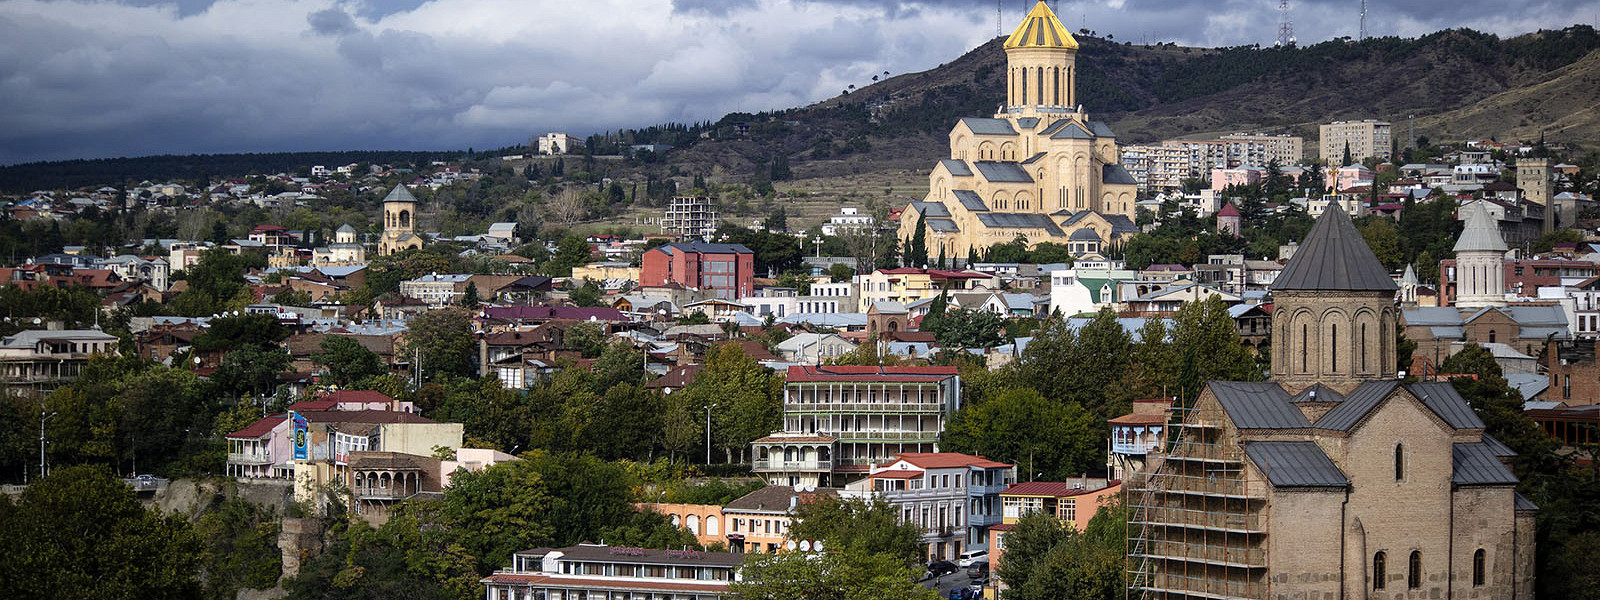 Журнал/Почему жить в Тбилиси на самом деле не очень? 7 весомых аргументов